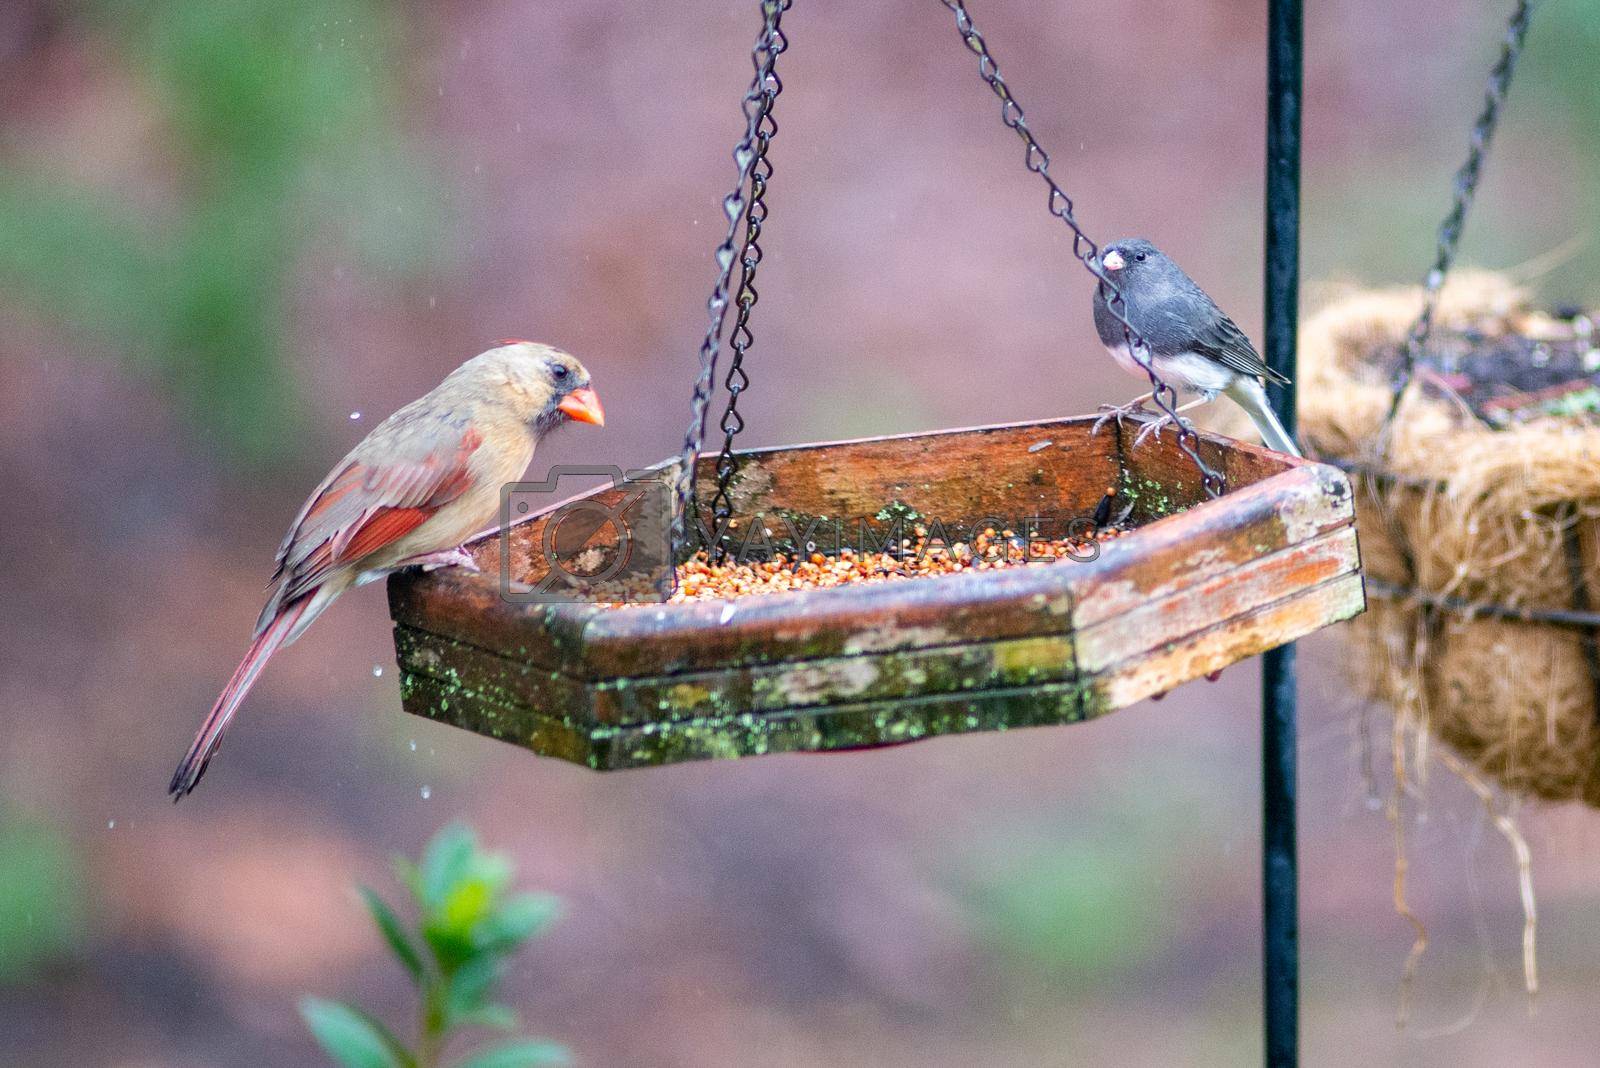 Royalty free image of backyard birds around bird feeder by digidreamgrafix